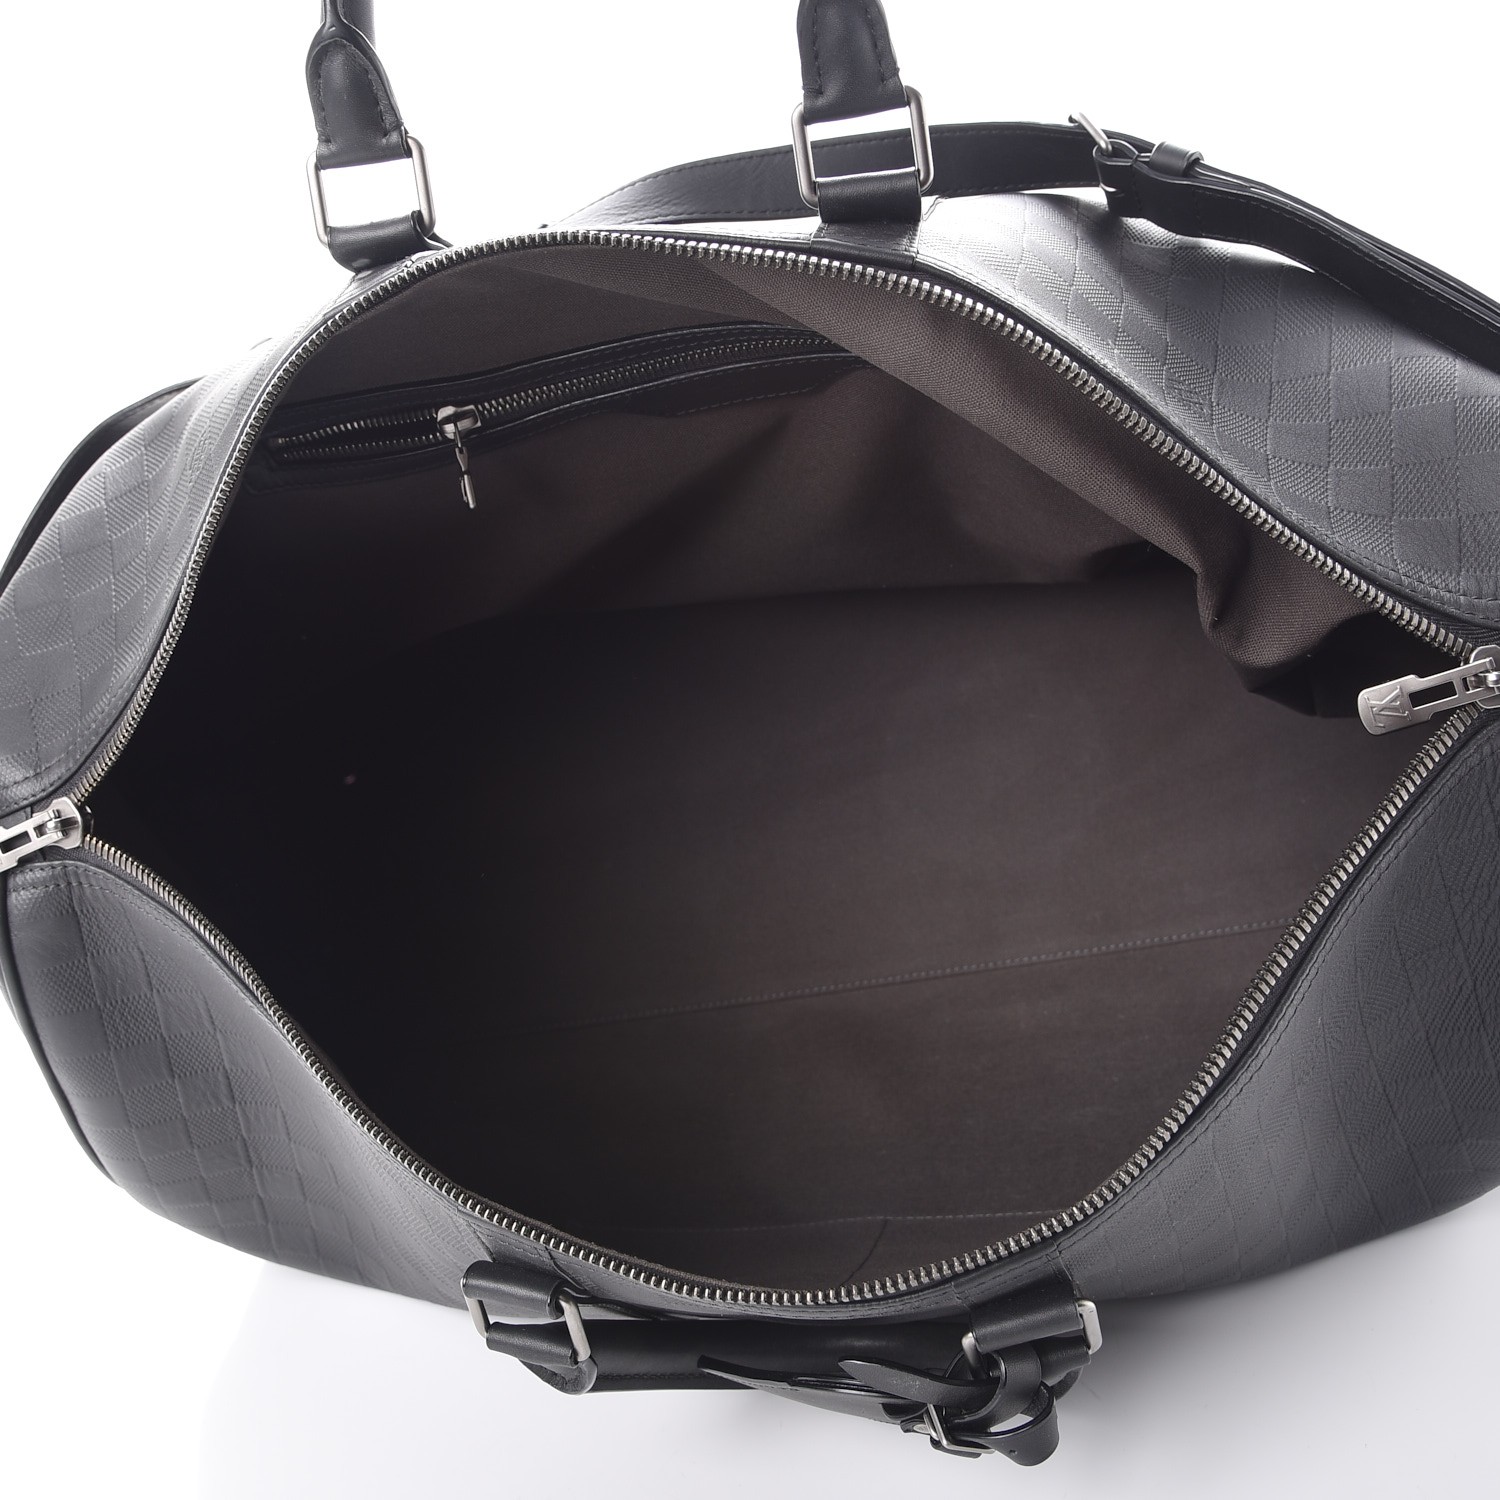 Louis Vuitton Damier Infini Keepall 45 Duffel Bag